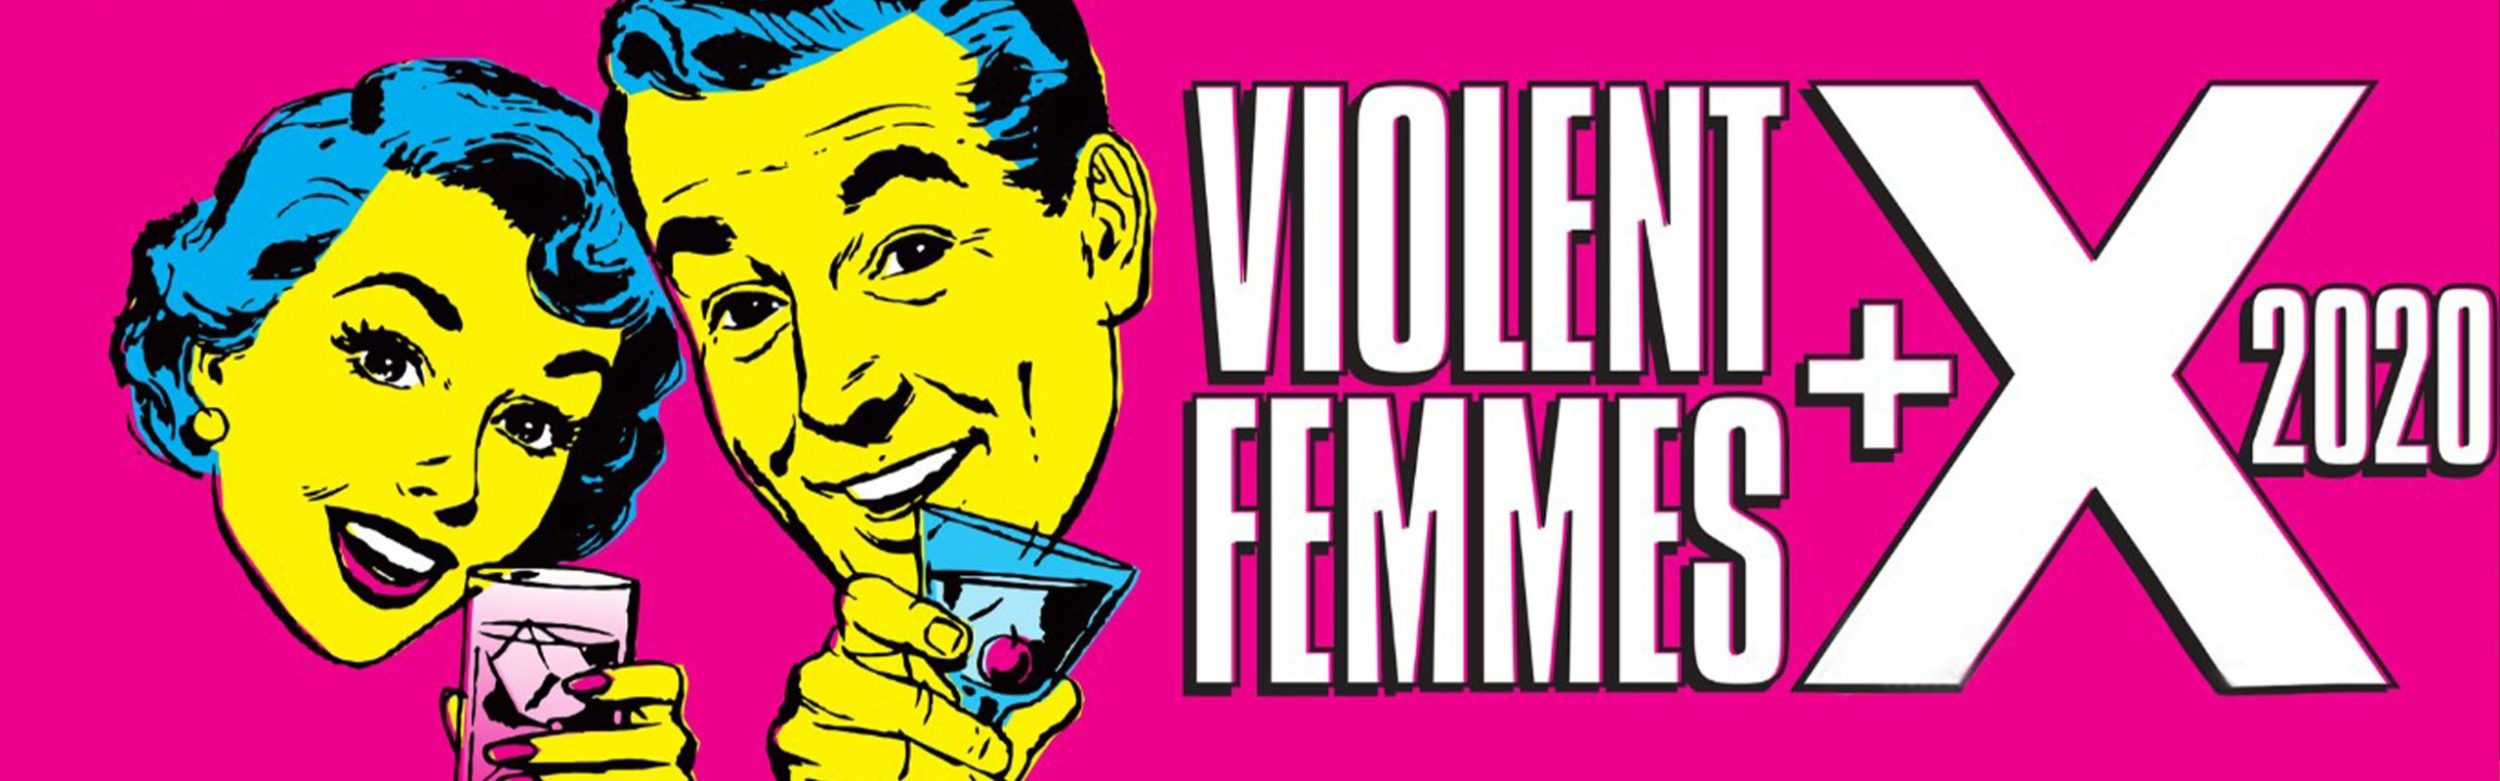 Violent Femmes + X